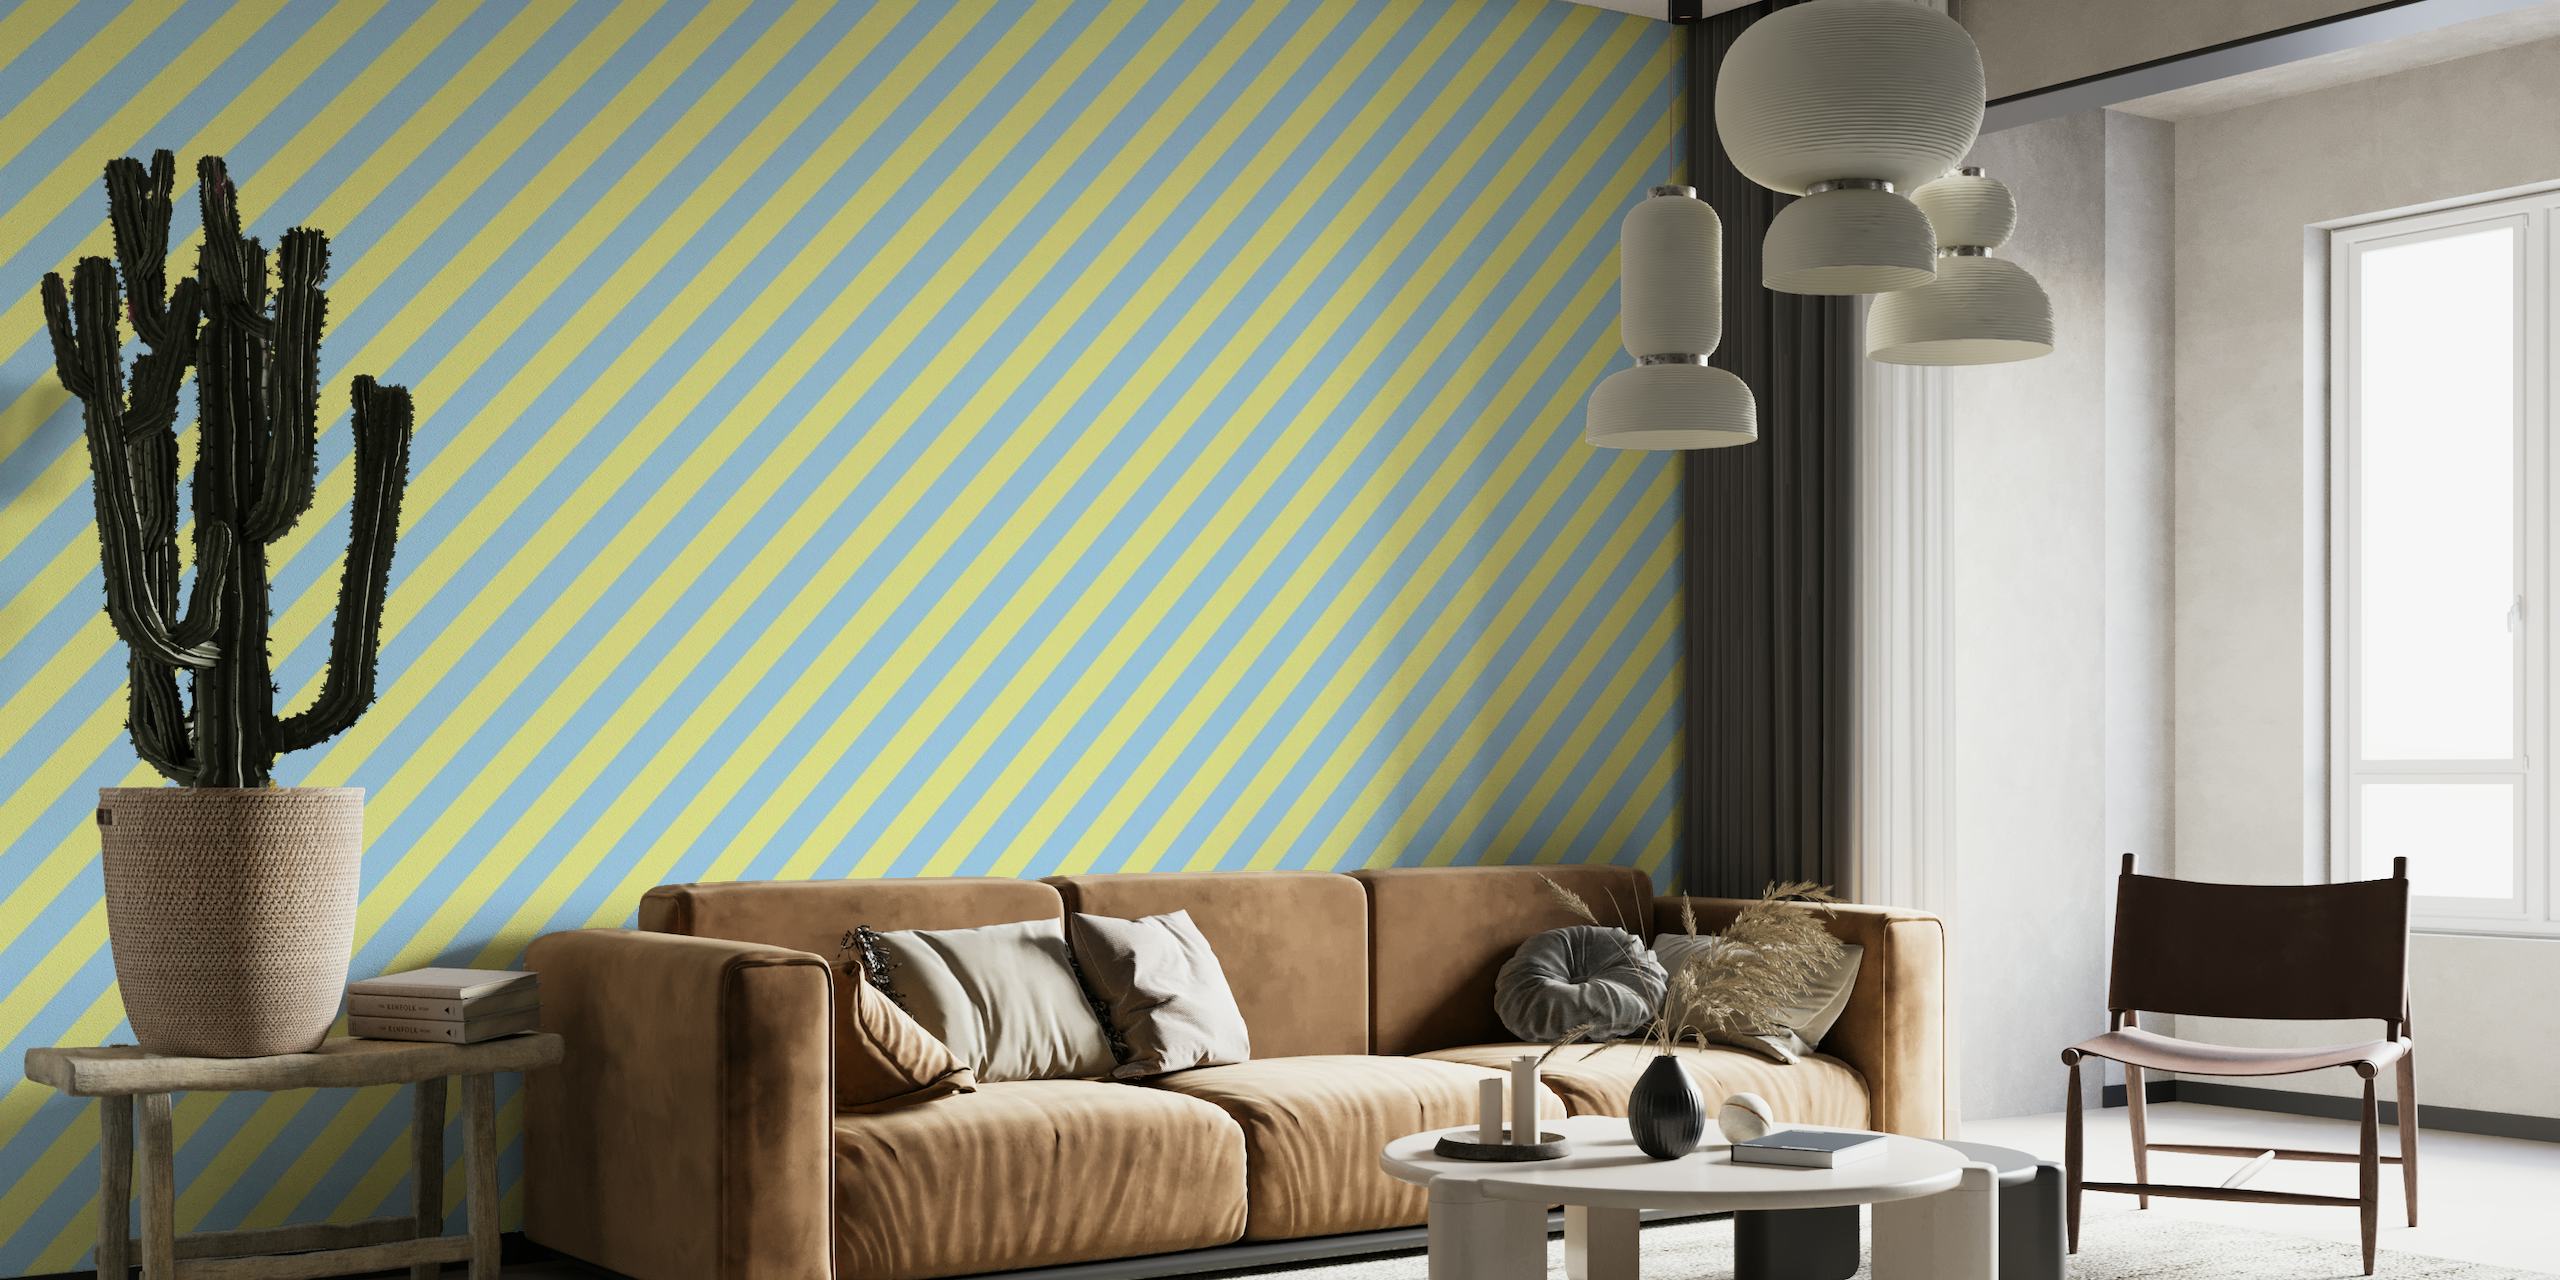 Blauw en geel diagonaal gestreept fotobehang dat een gedurfde en levendige achtergrond creëert